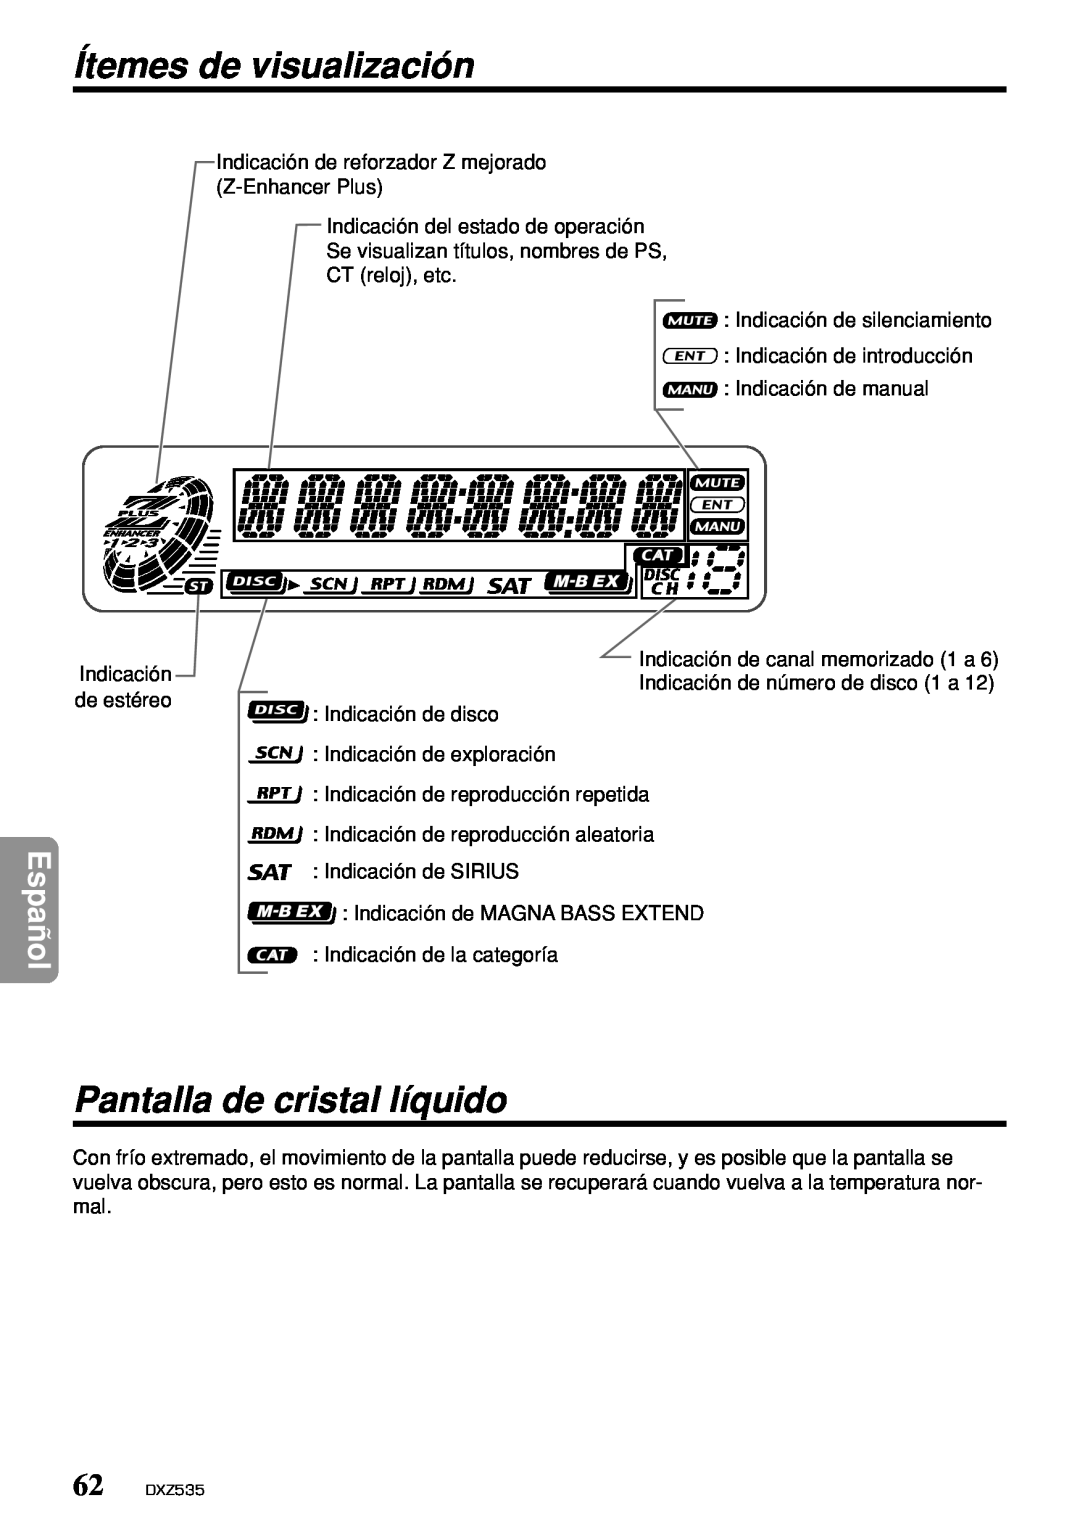 Clarion DXZ535 owner manual Ítemes de visualización, Pantalla de cristal líquido, Español 